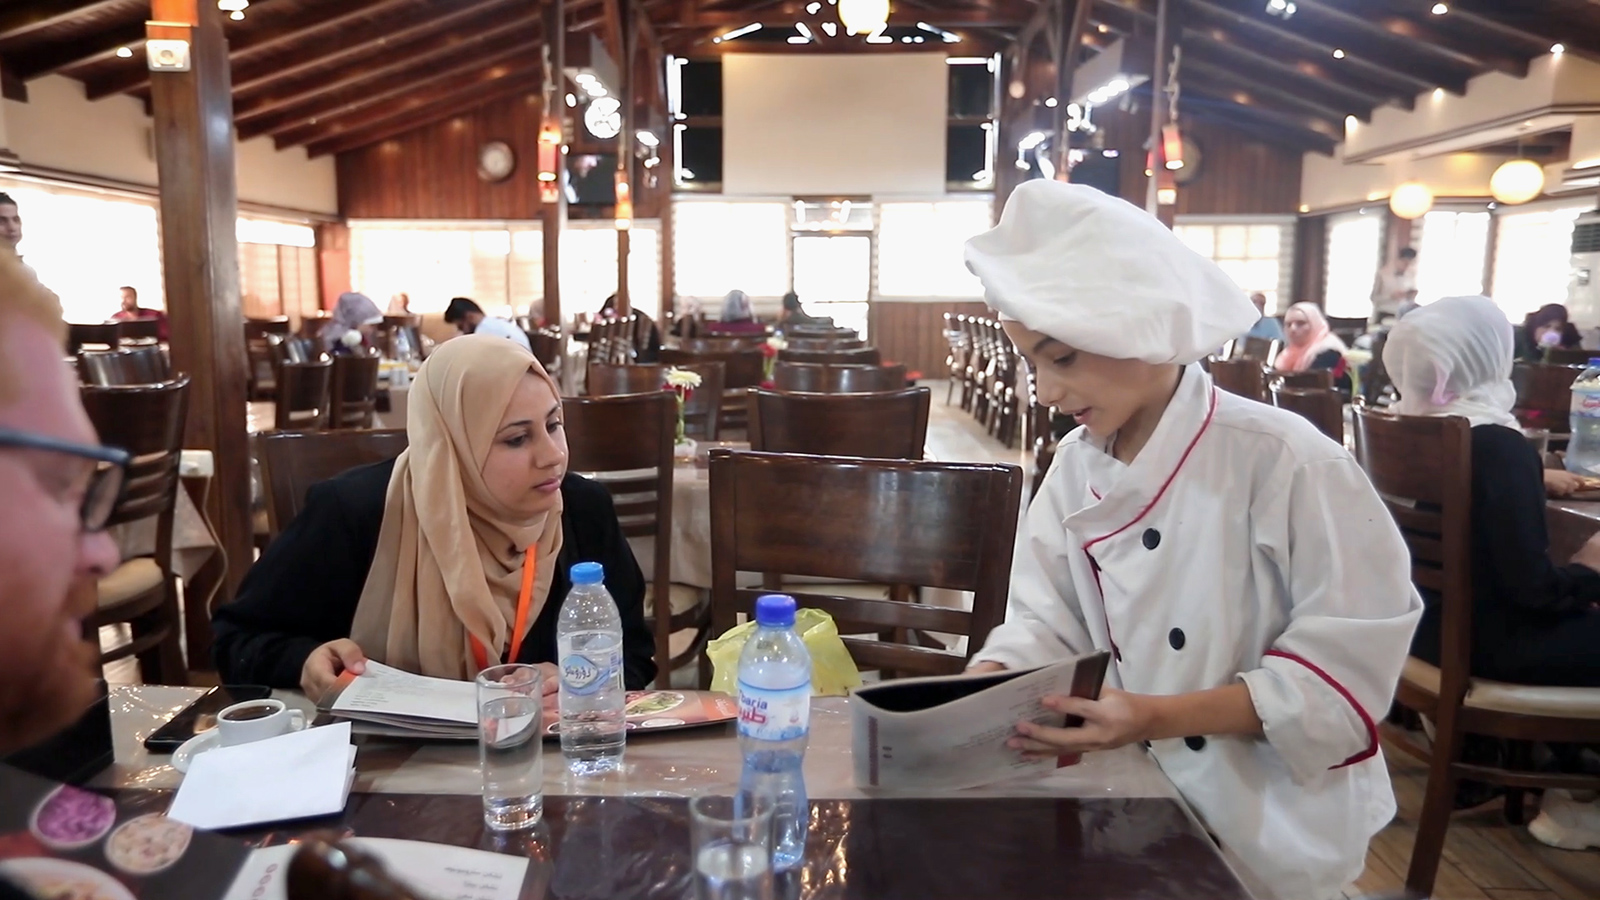 ‪الطفل الشيف يتقن فن تقديم الطعام والتعامل مع الزبائن وجذبهم للأطعمة التي يقدمها المطعم الذي يعمل فيه‬ (الجزيرة)